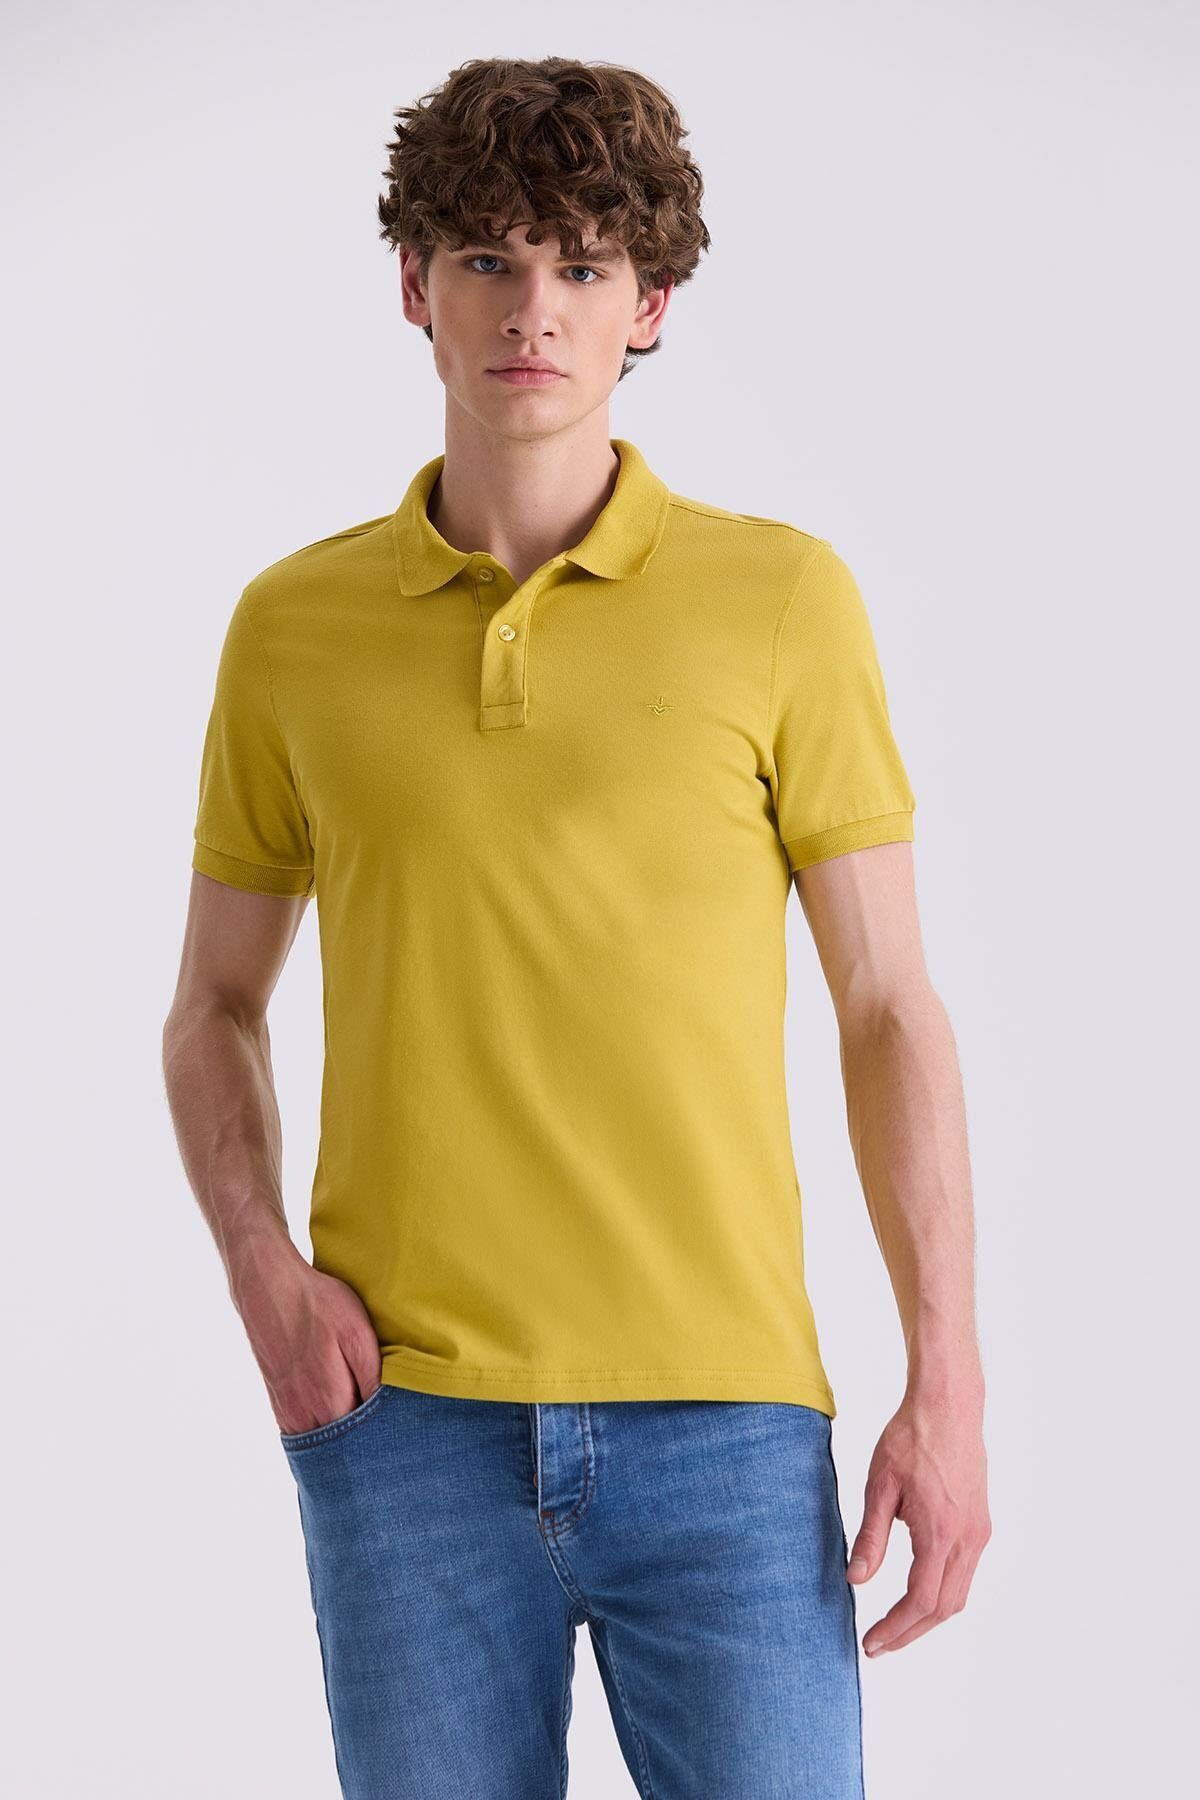 Jakamen Koyu Sarı Slim Fit Polo Yaka T-Shirt